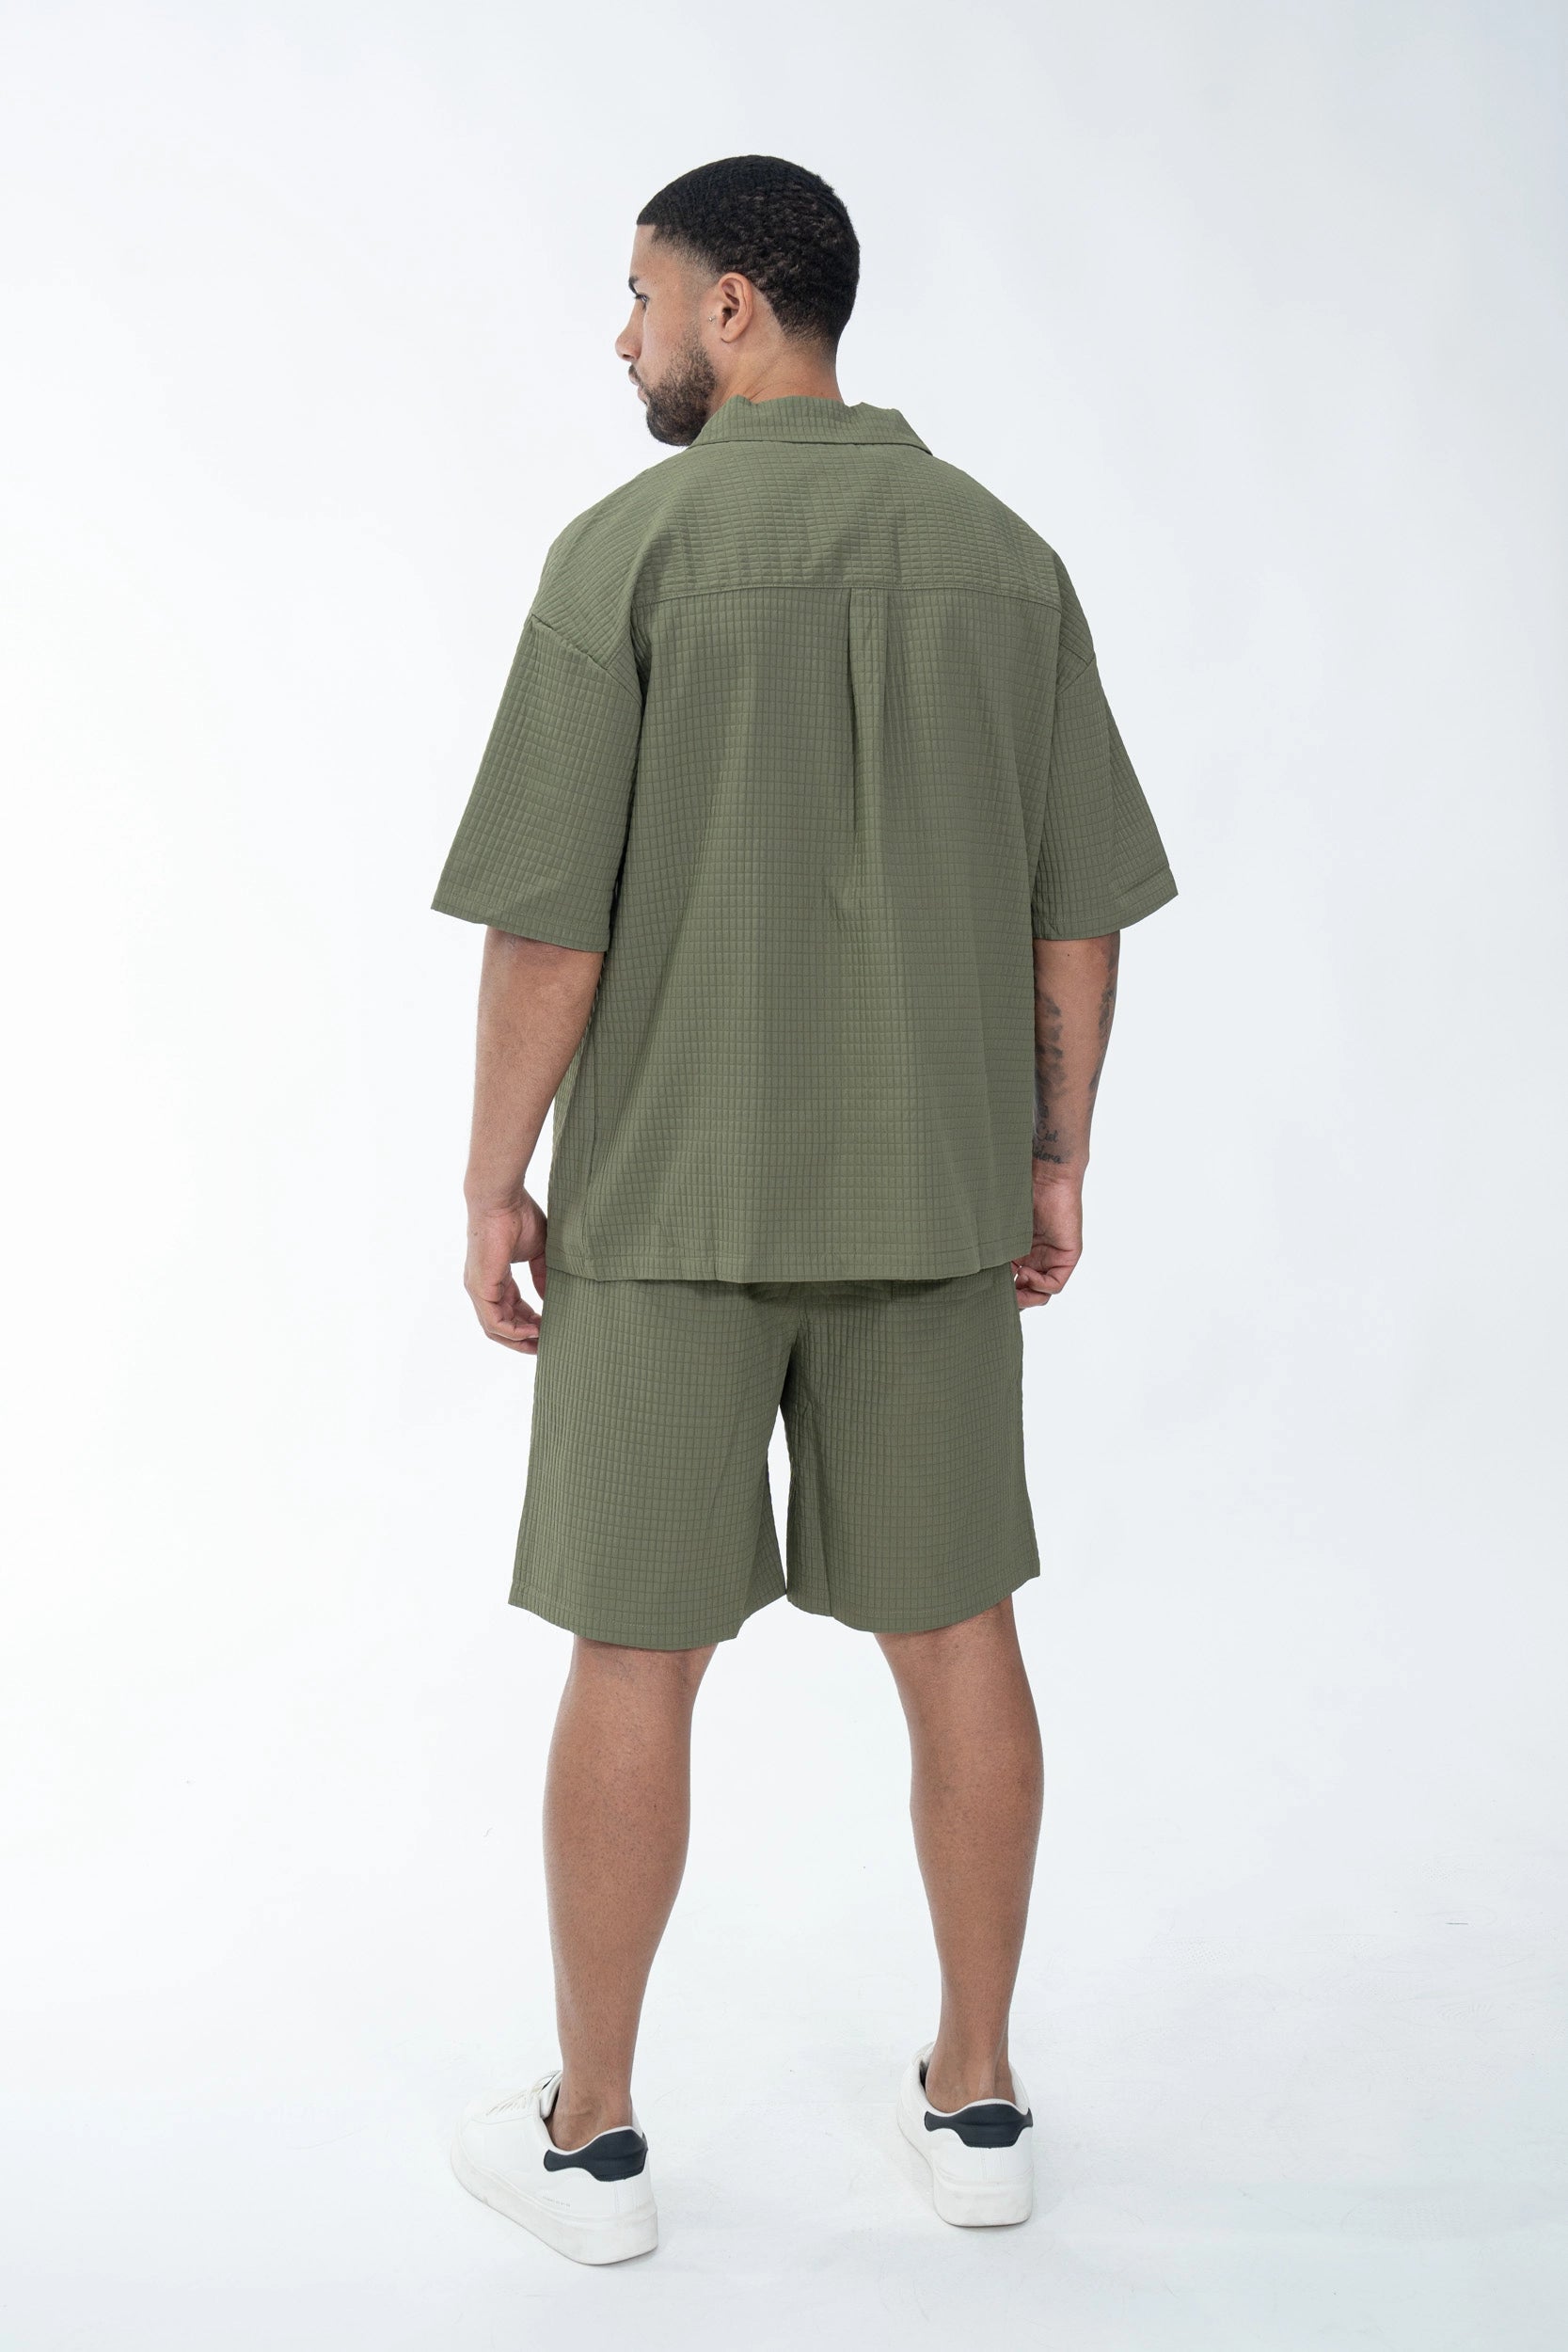 Textured plain shirt shorts set